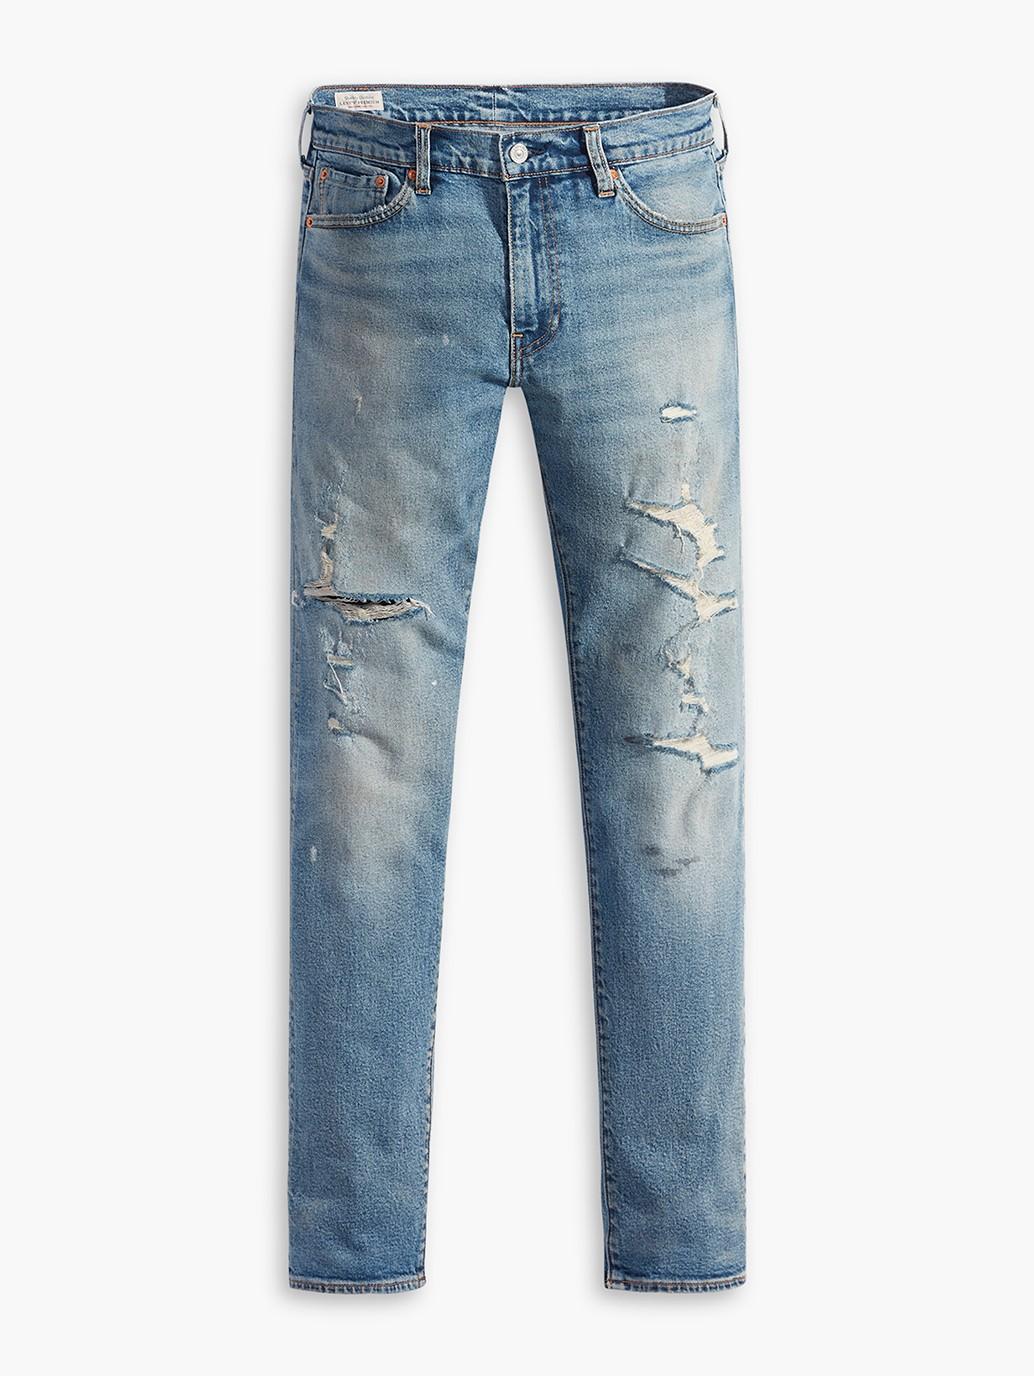 Buy Levi's® Men's 511™ Slim Jeans | Levi’s® Official Online Store PH